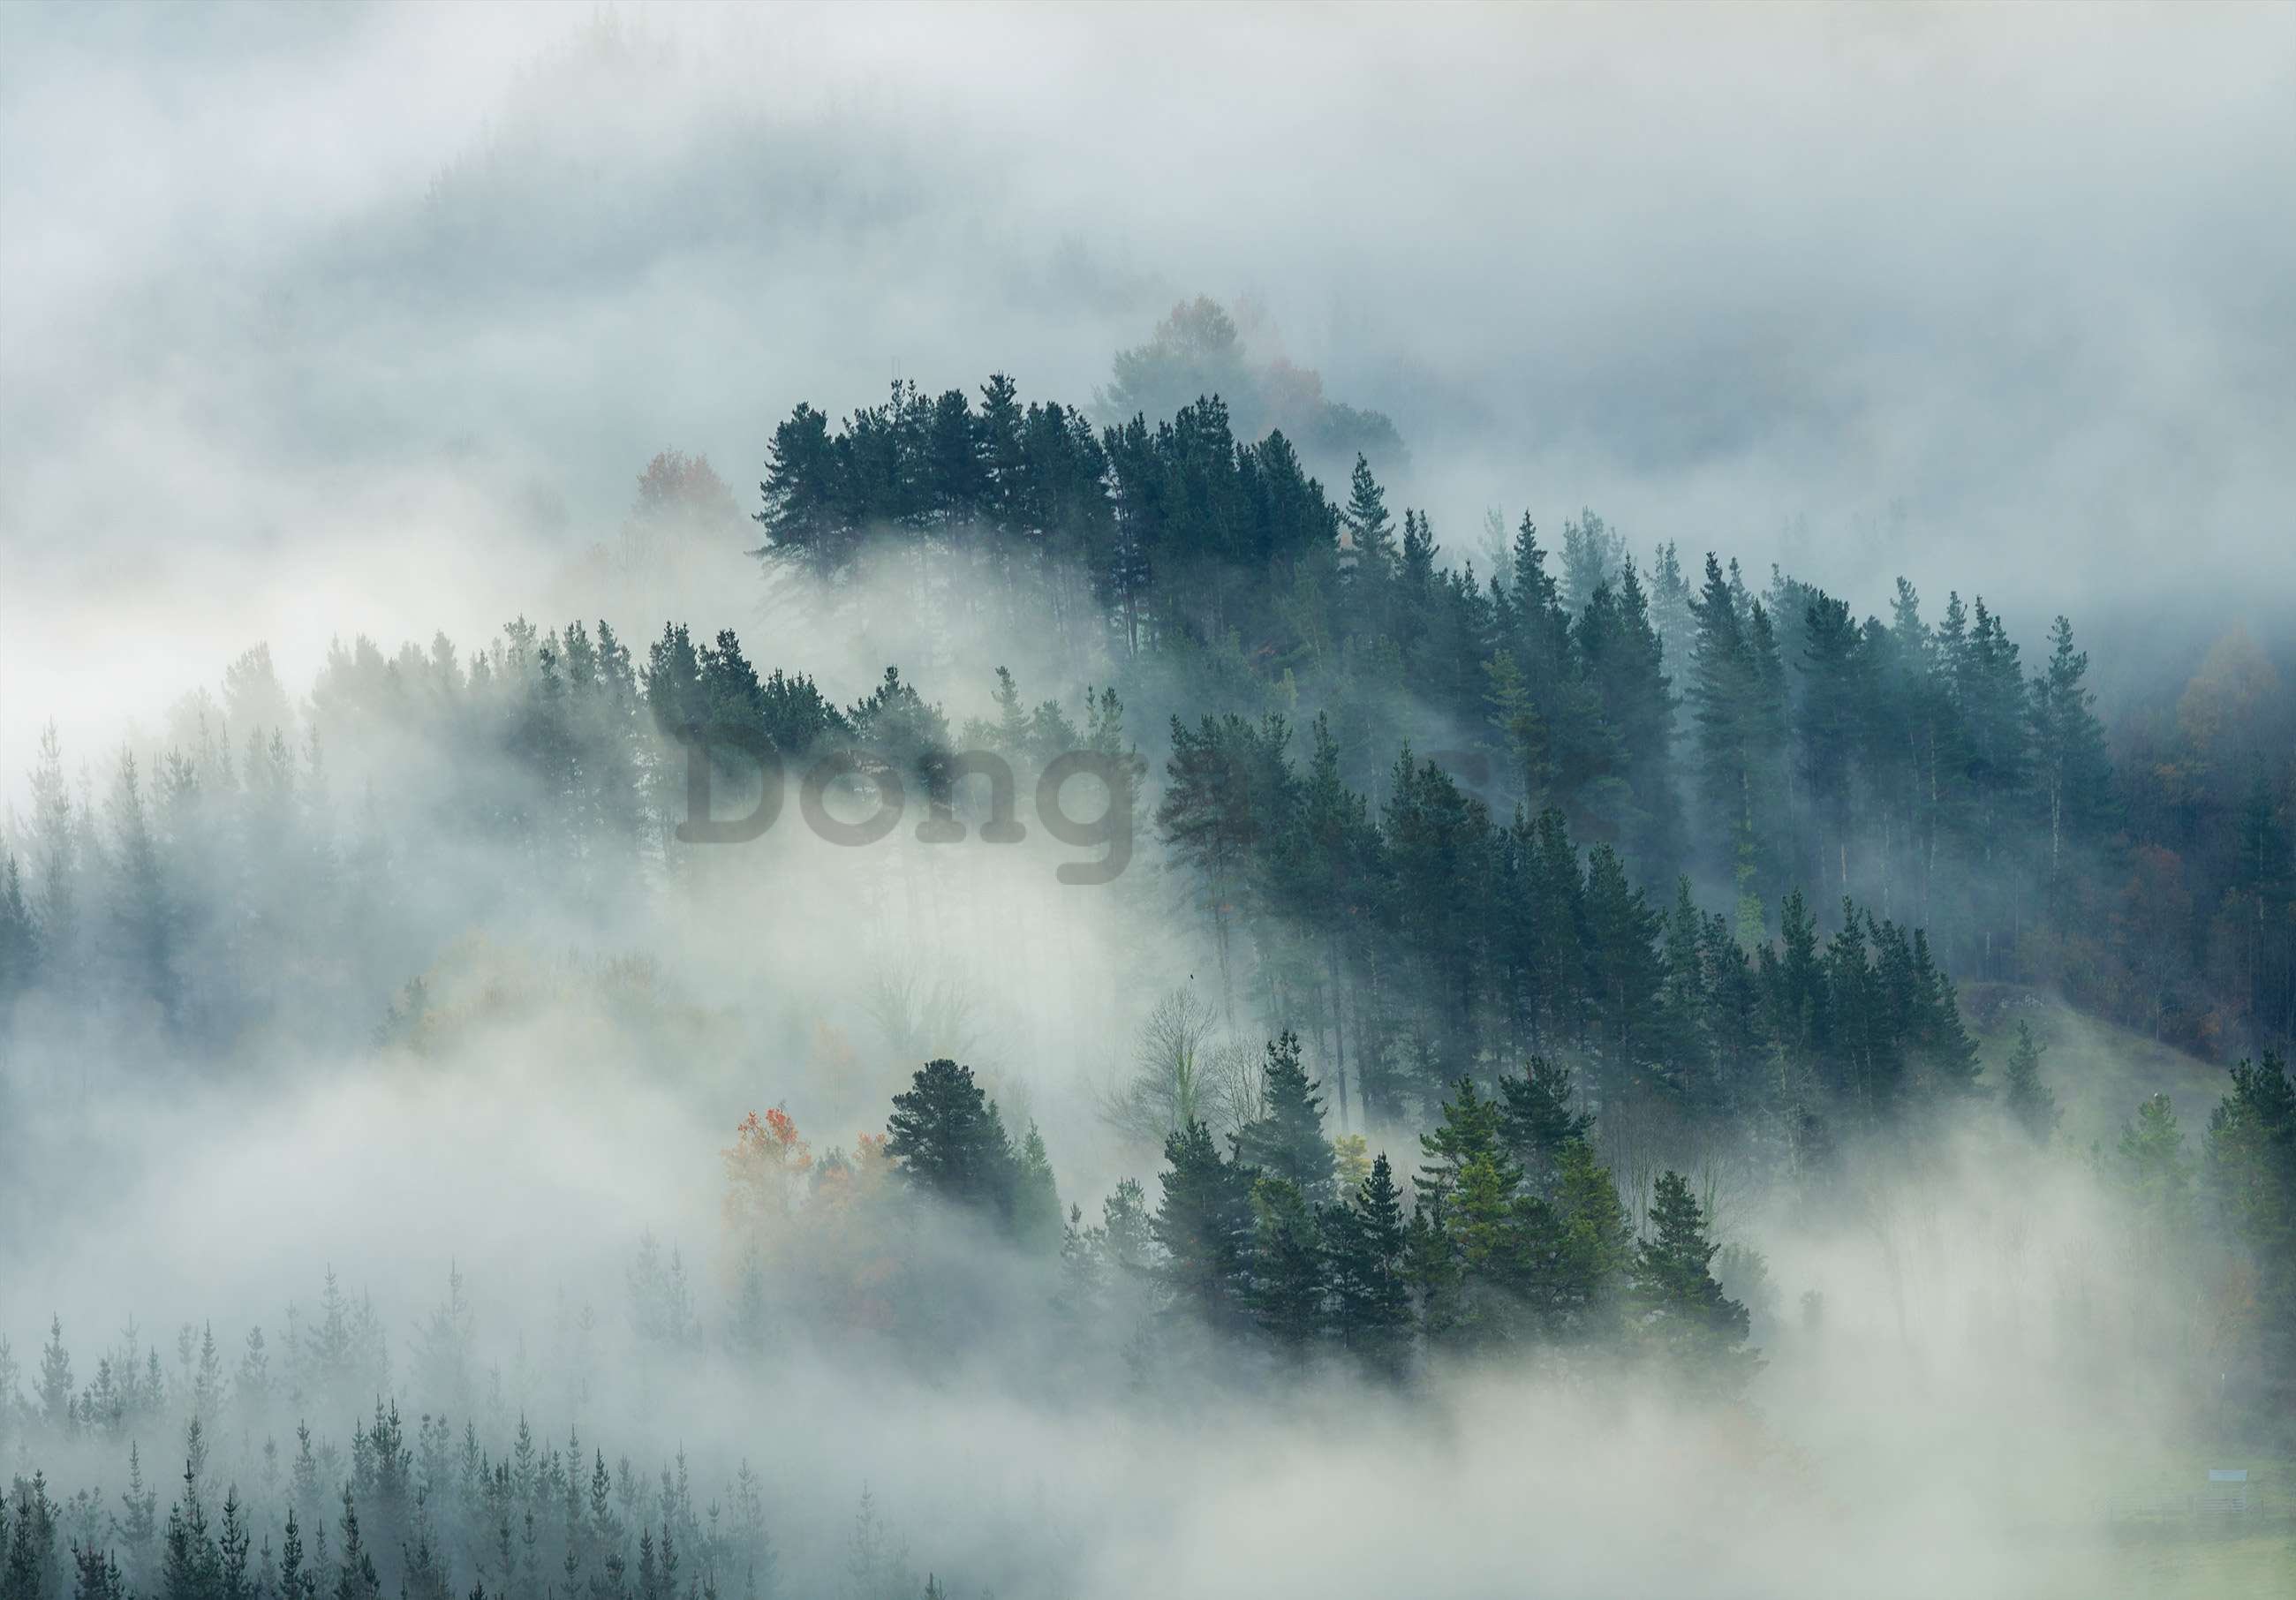 Fototapeta vliesová: Hmla nad lesom (4) - 368x254 cm